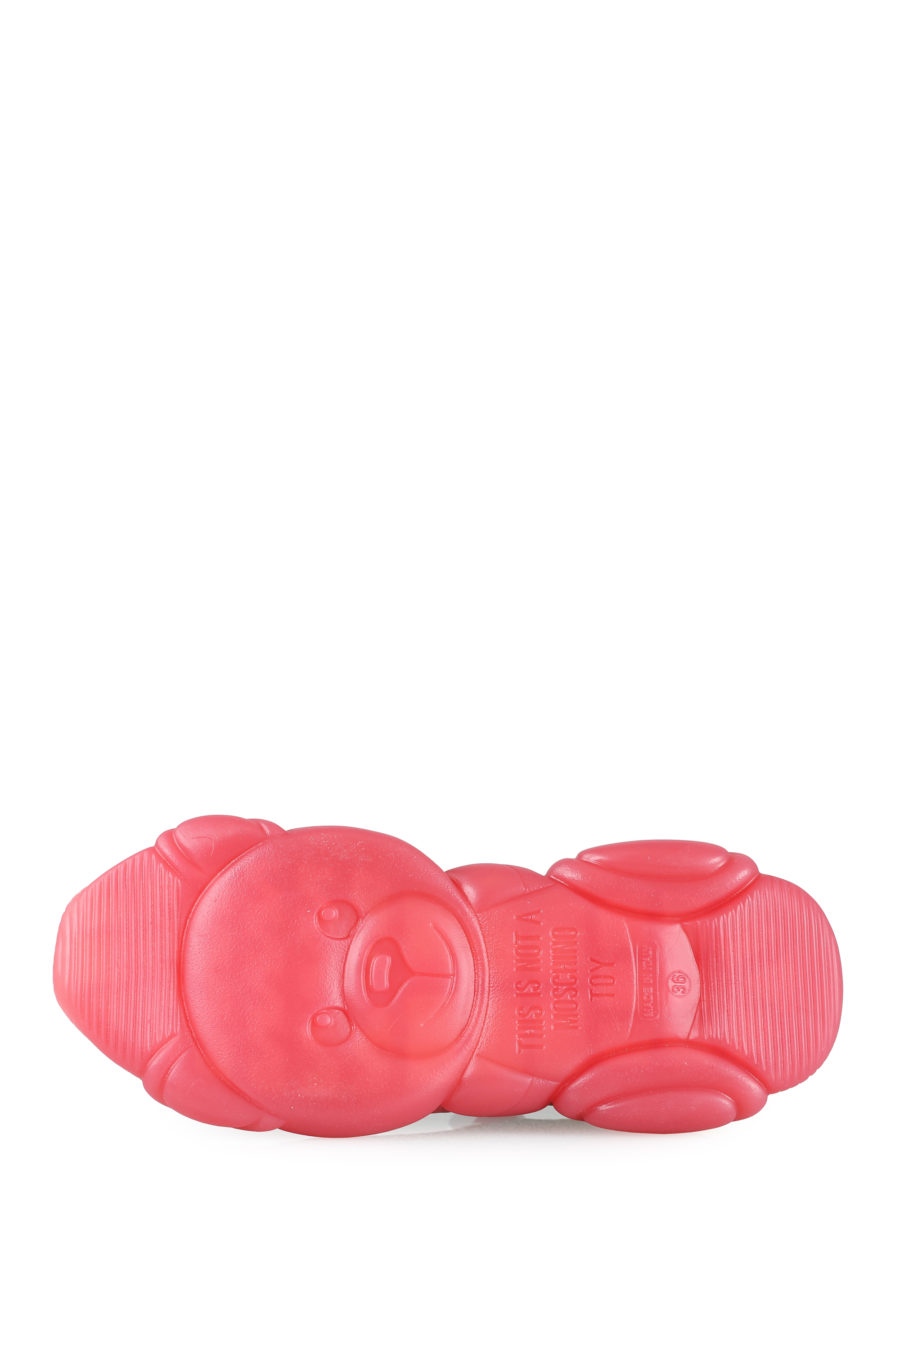 Zapatillas "Teddy" color rosa - IMG 1610